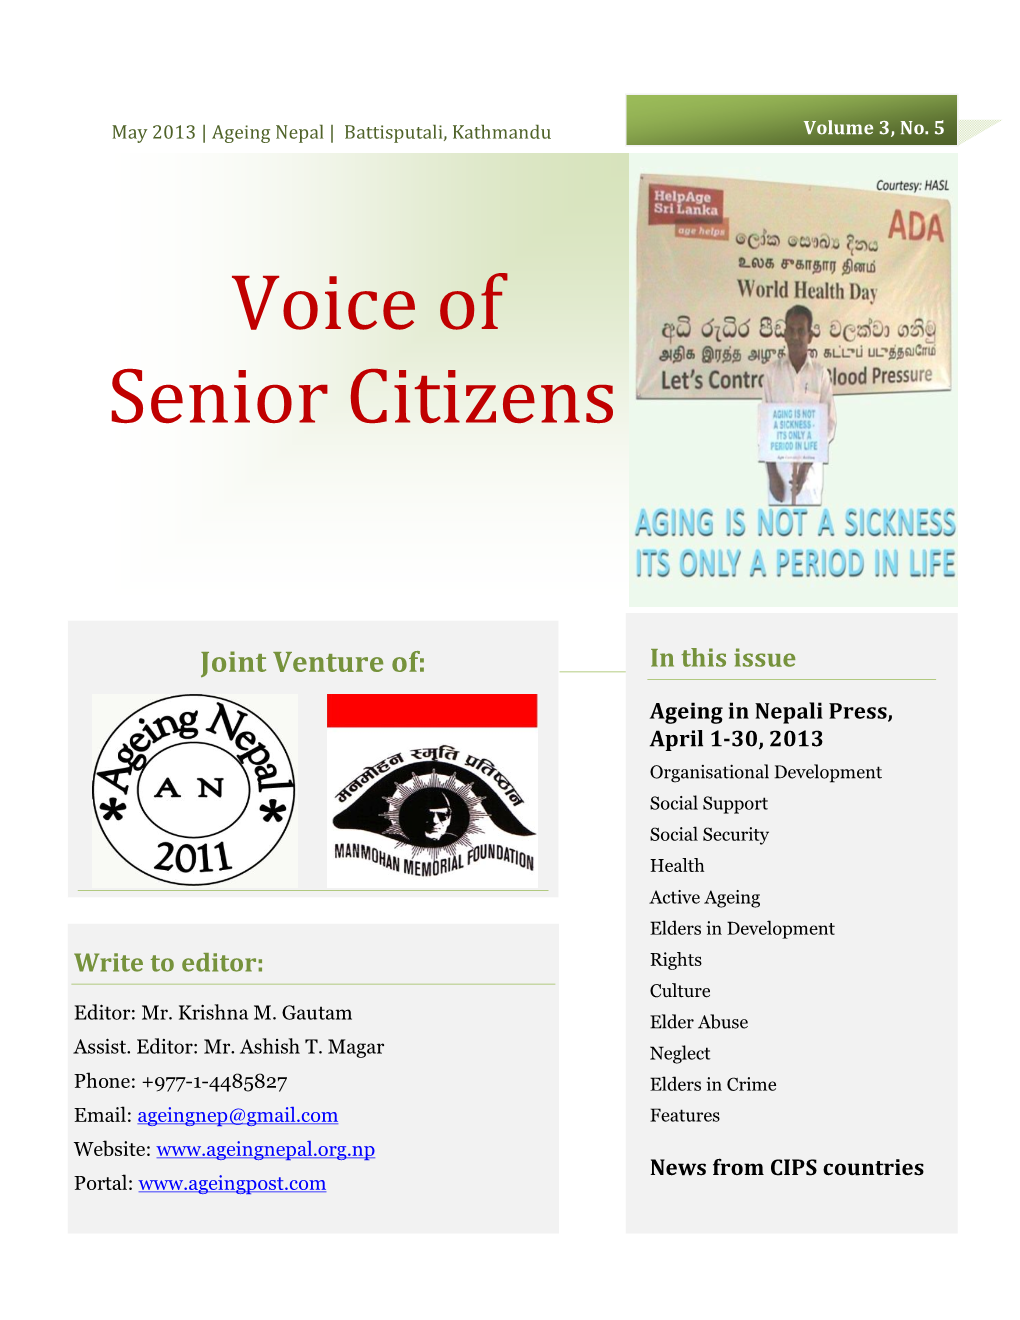 Voice of Senior Citizens